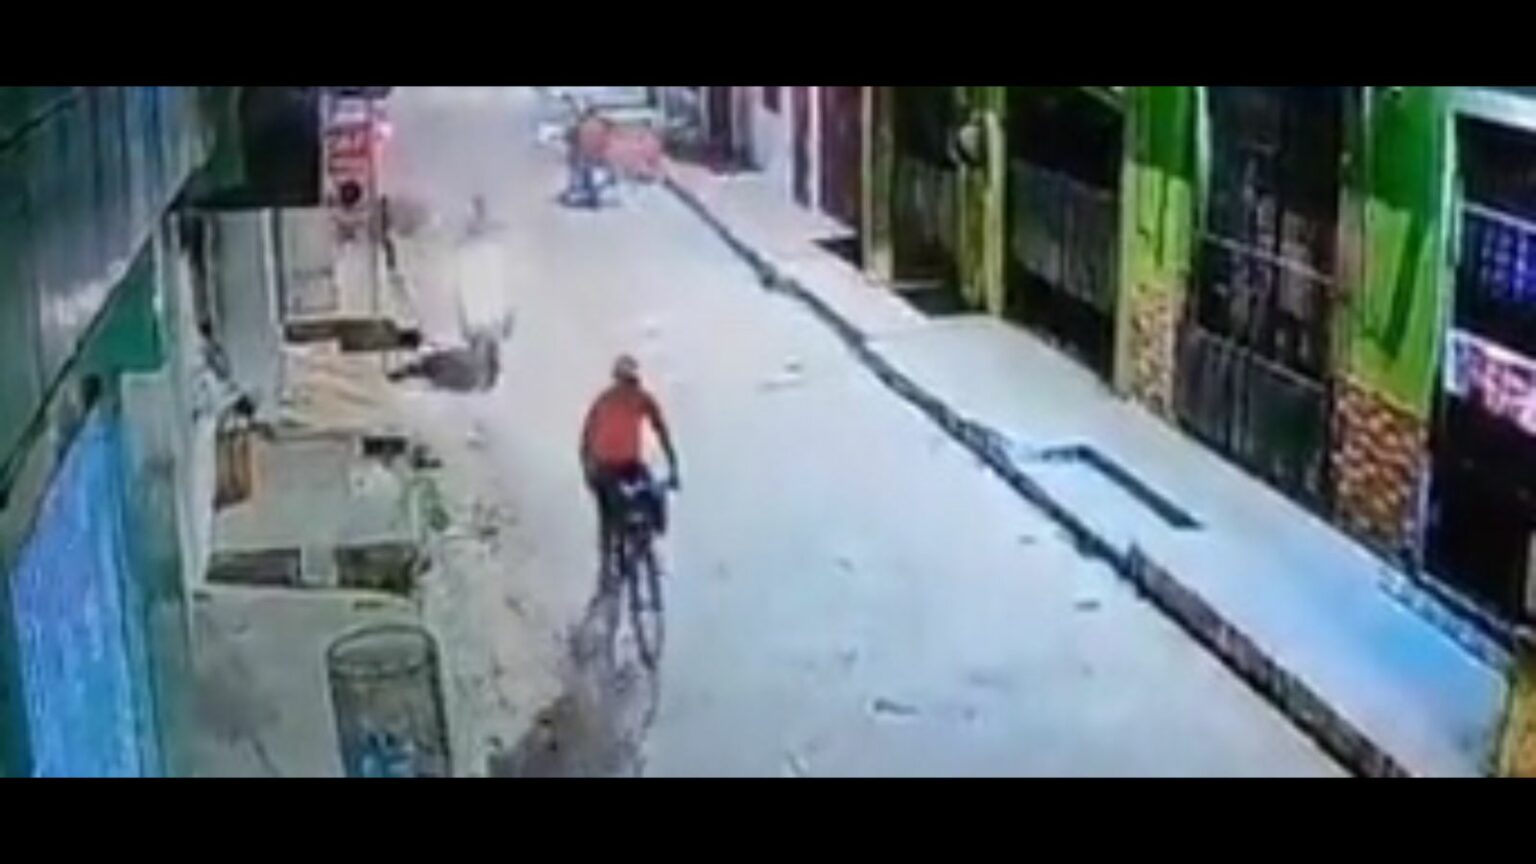 Vídeo: dupla em motocicleta executa homem a tiros no Pará